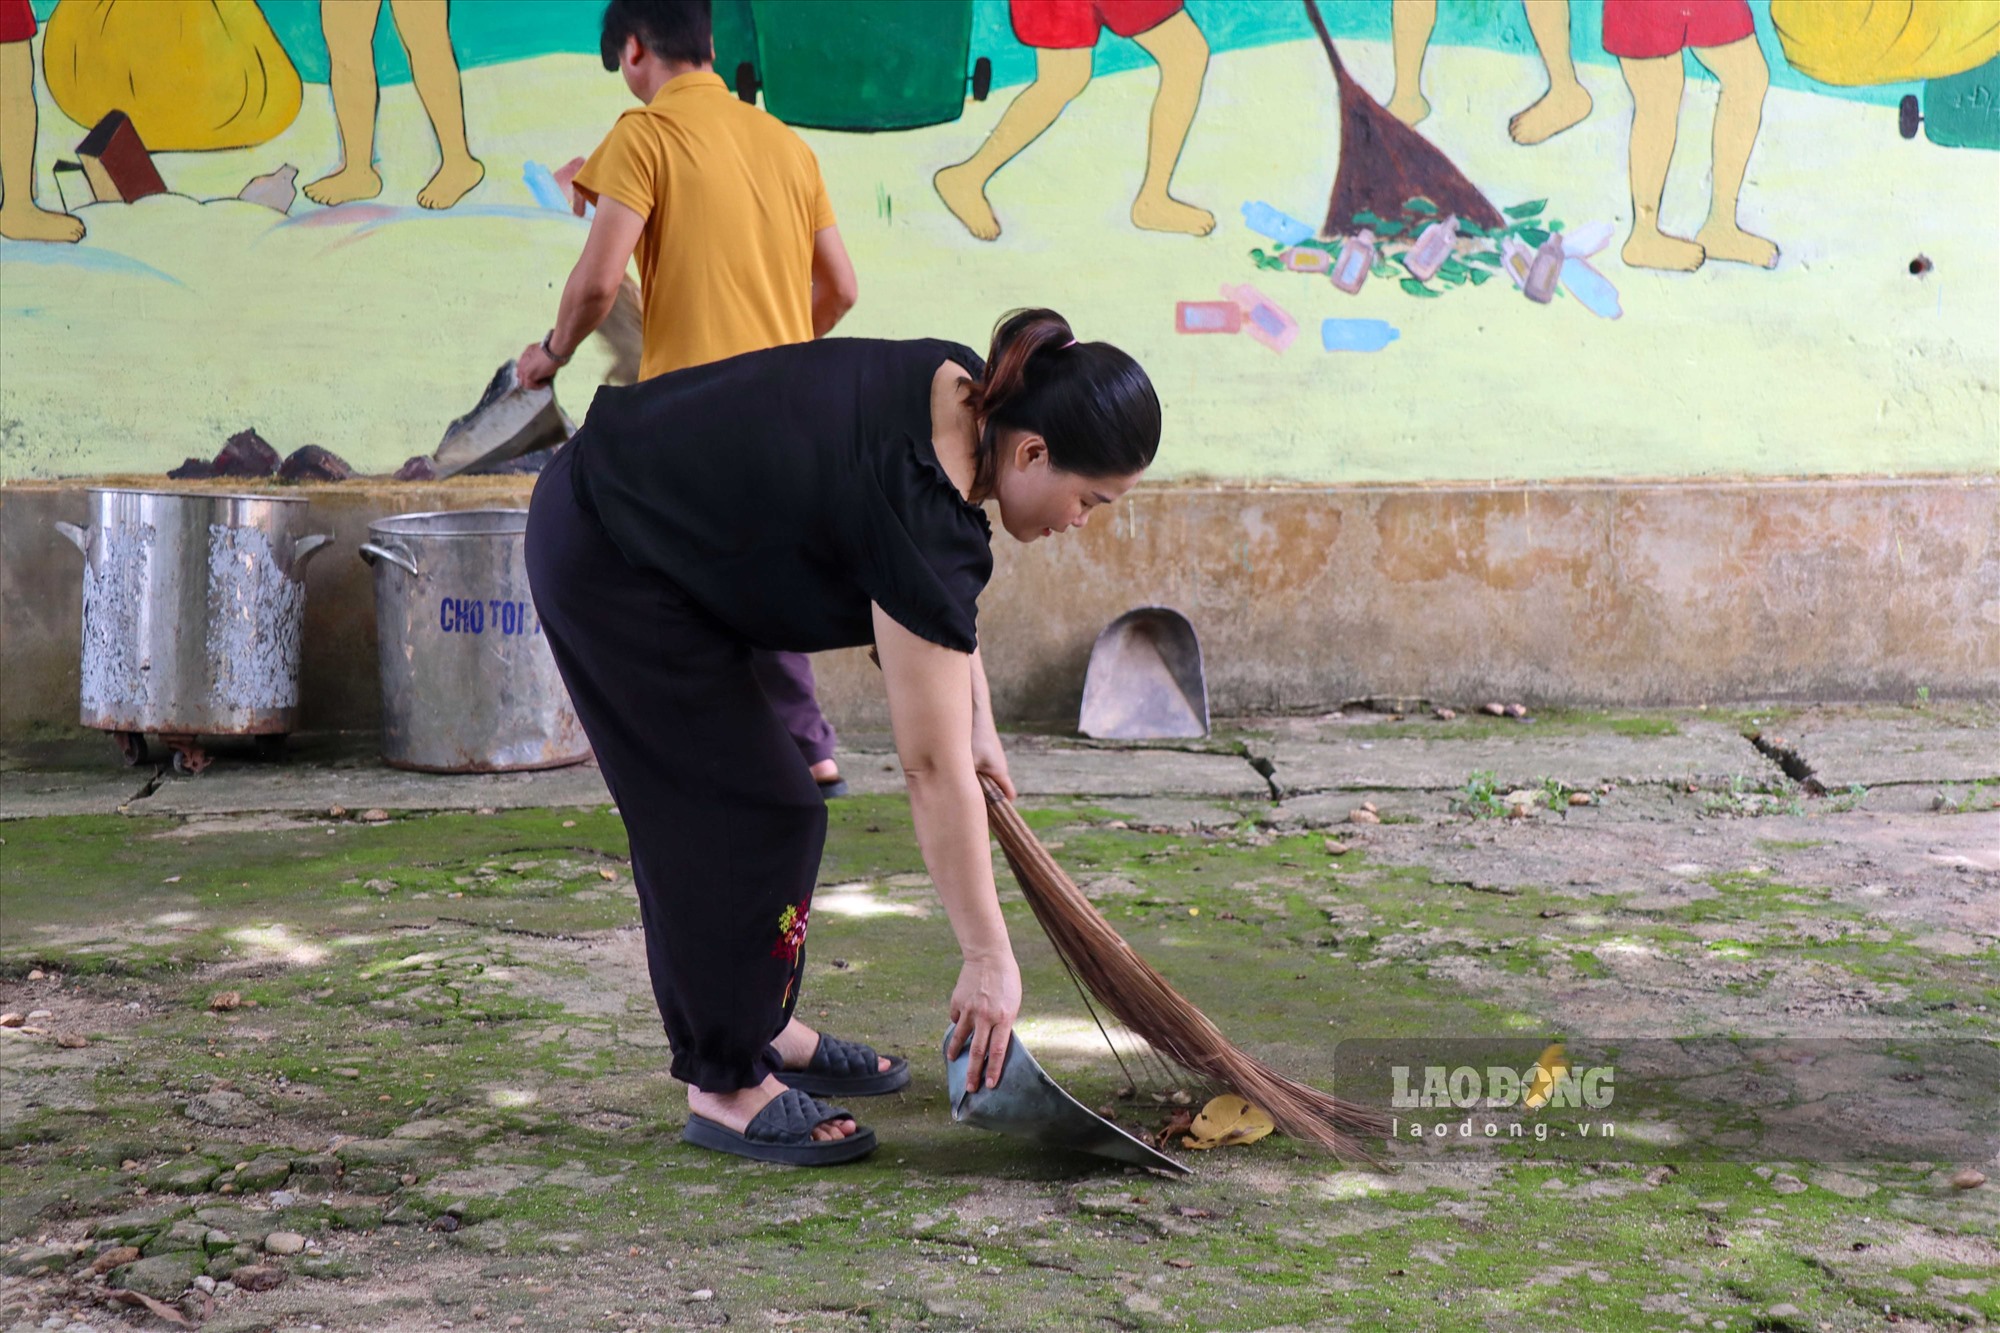 Các thầy cô cũng tích cực chuẩn bị cho năm học mới, giúp ngôi trường xanh, sạch, đẹp.